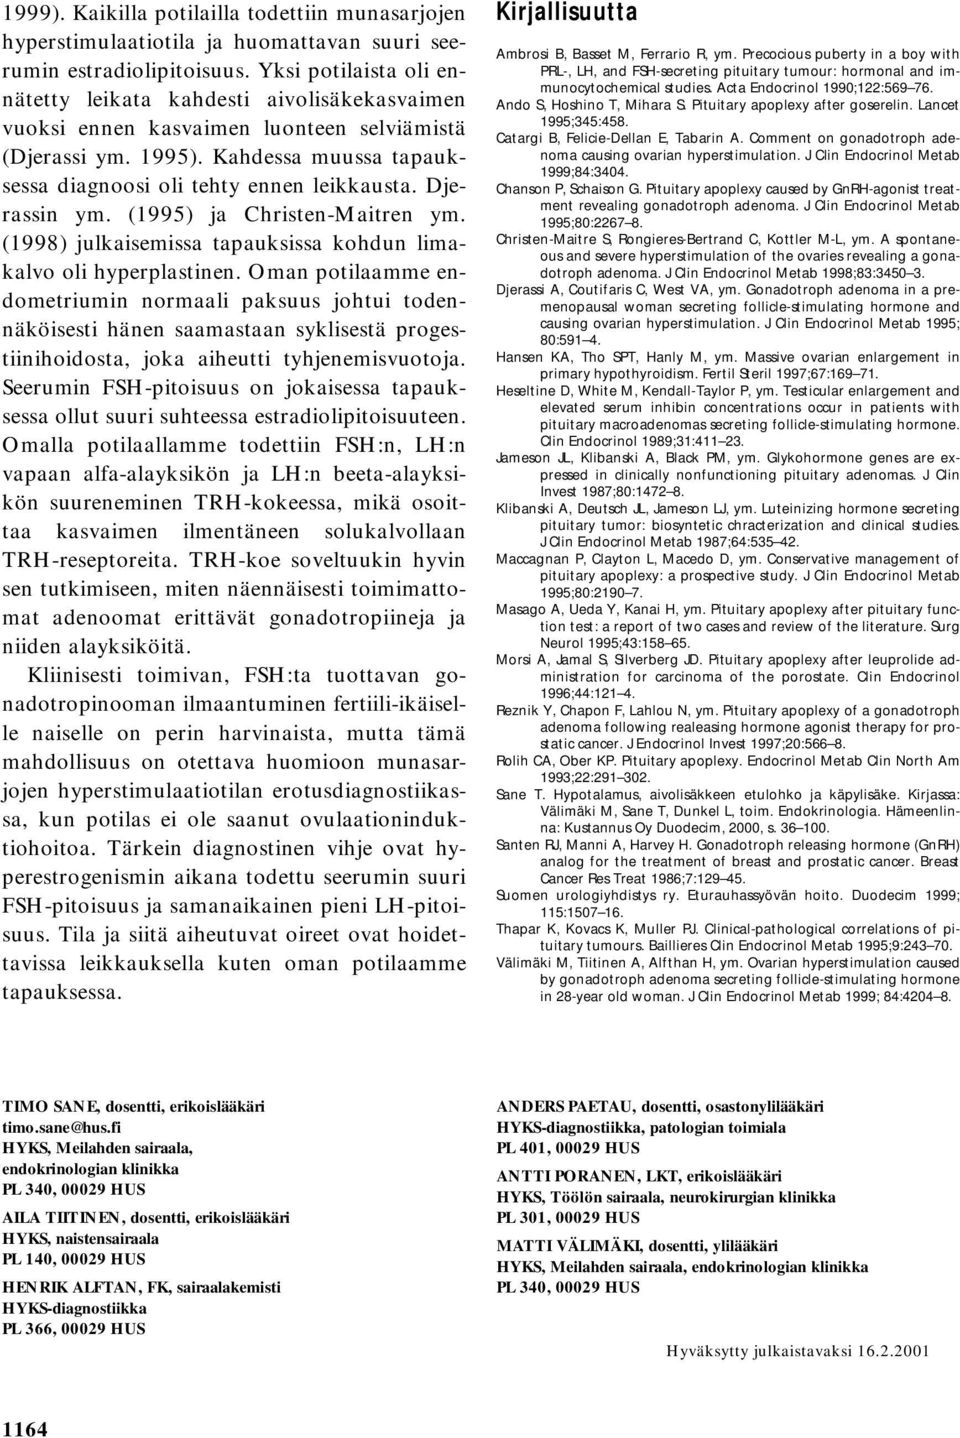 Djerassin ym. (1995) ja Christen-Maitren ym. (1998) julkaisemissa tapauksissa kohdun limakalvo oli hyperplastinen.